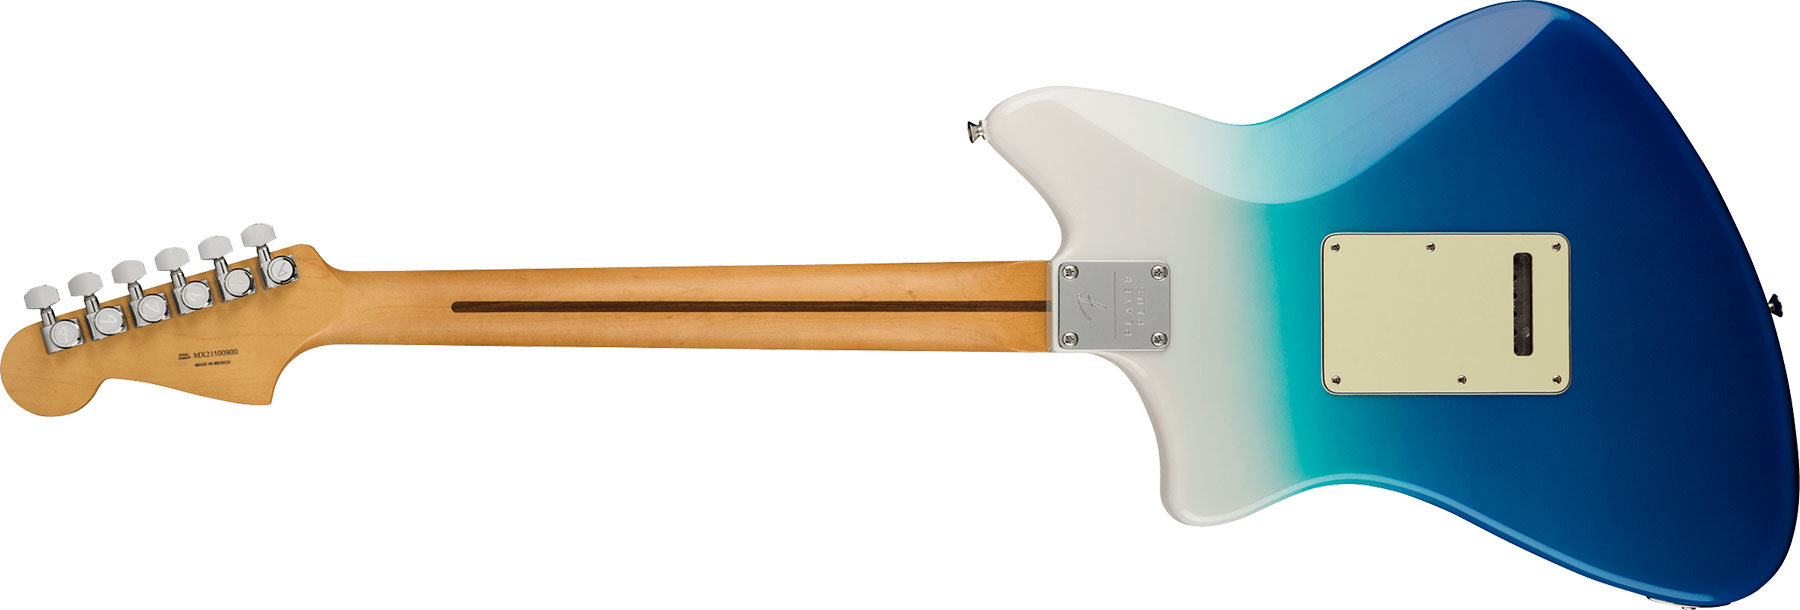 Fender Meteora Player Plus Hh Mex 2h Ht Pf - Belair Blue - Guitare Électrique RÉtro Rock - Variation 1